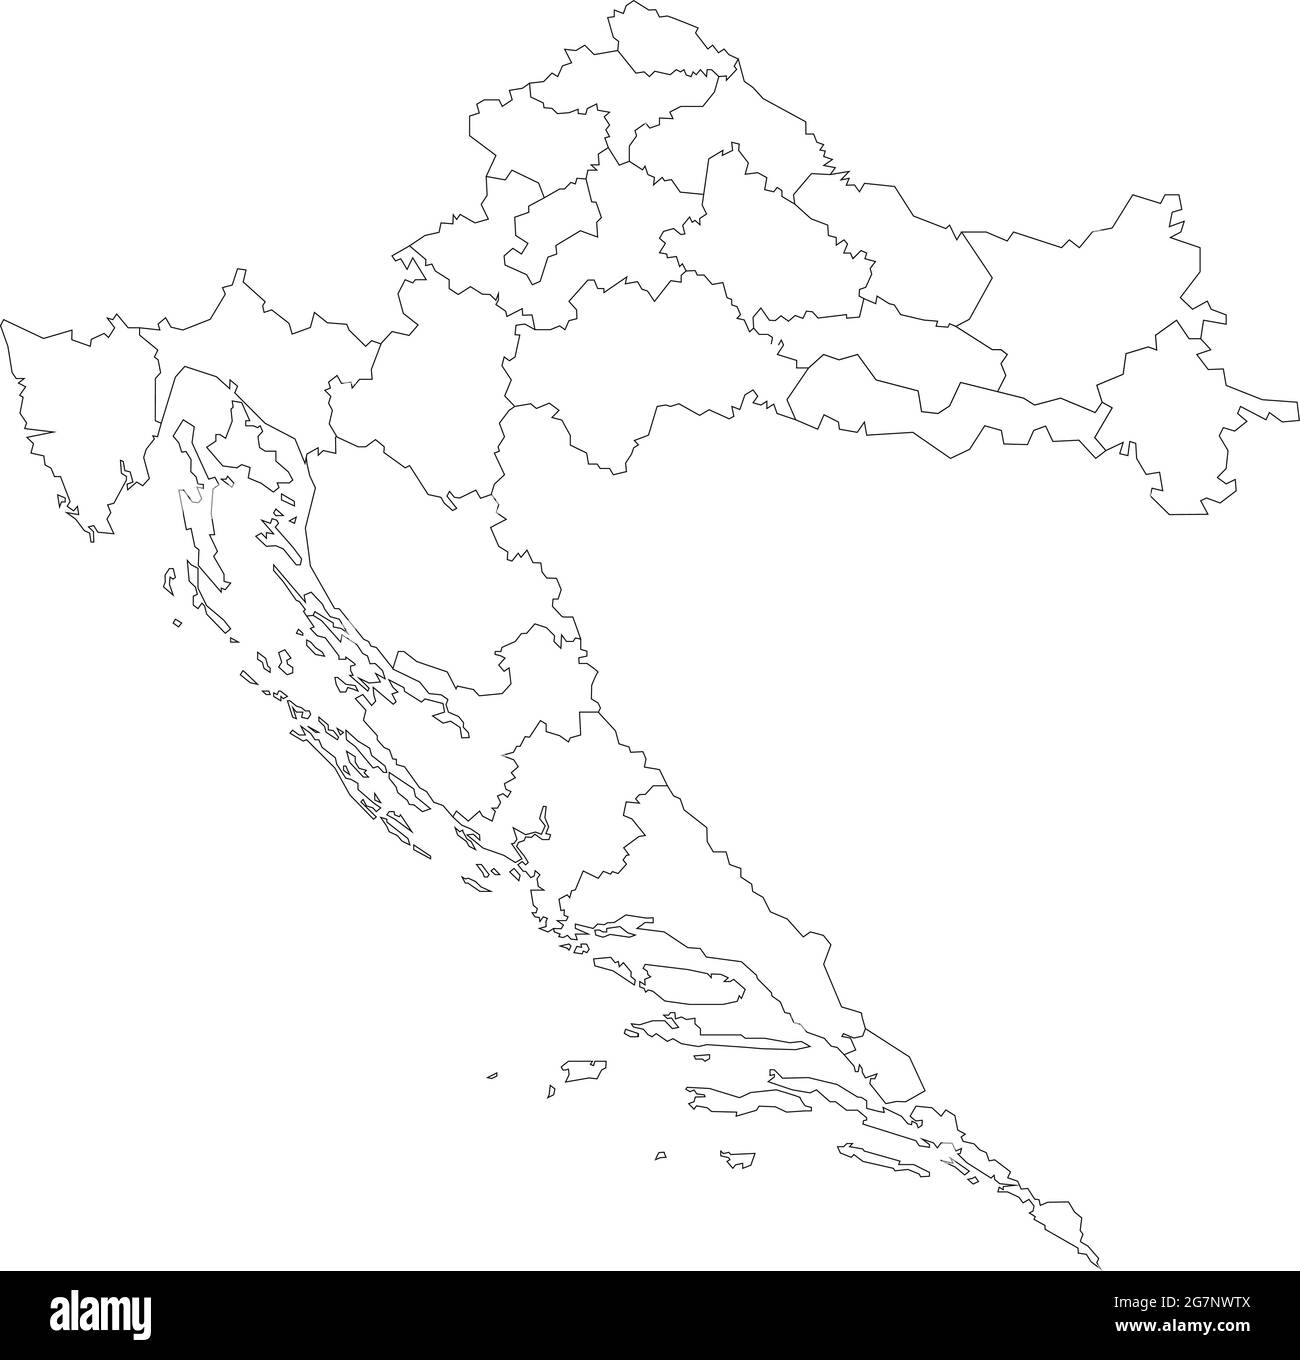 Vektorkarte von Kroatien, farblos mit Umriss zu studieren Stock Vektor